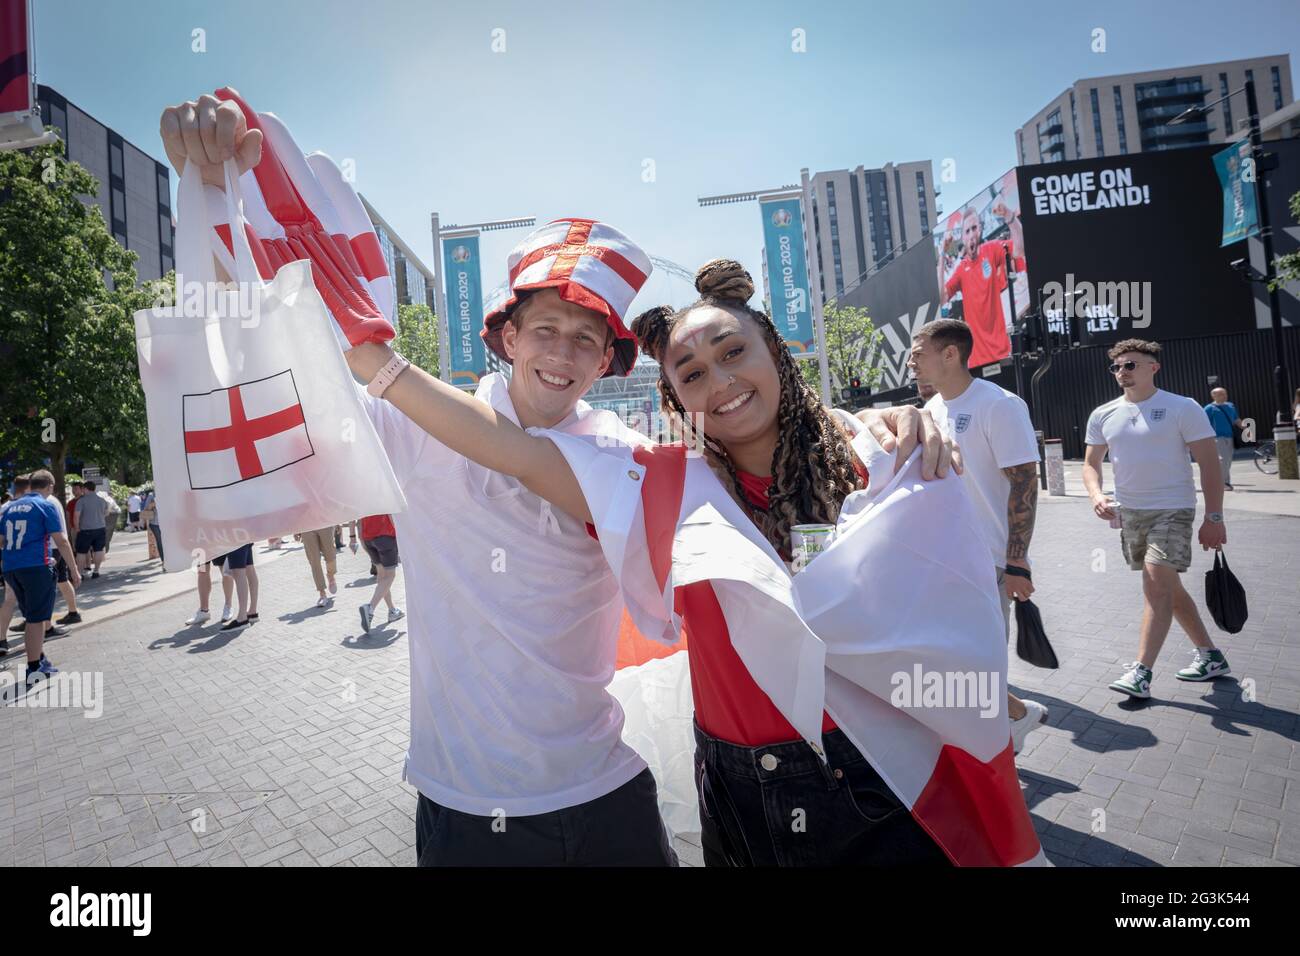 Euro 2020: Los aficionados llegan a Wembley con un ambiente festivo listo para el partido Inglaterra contra Croacia, European Championships Group D. London, Reino Unido. Foto de stock